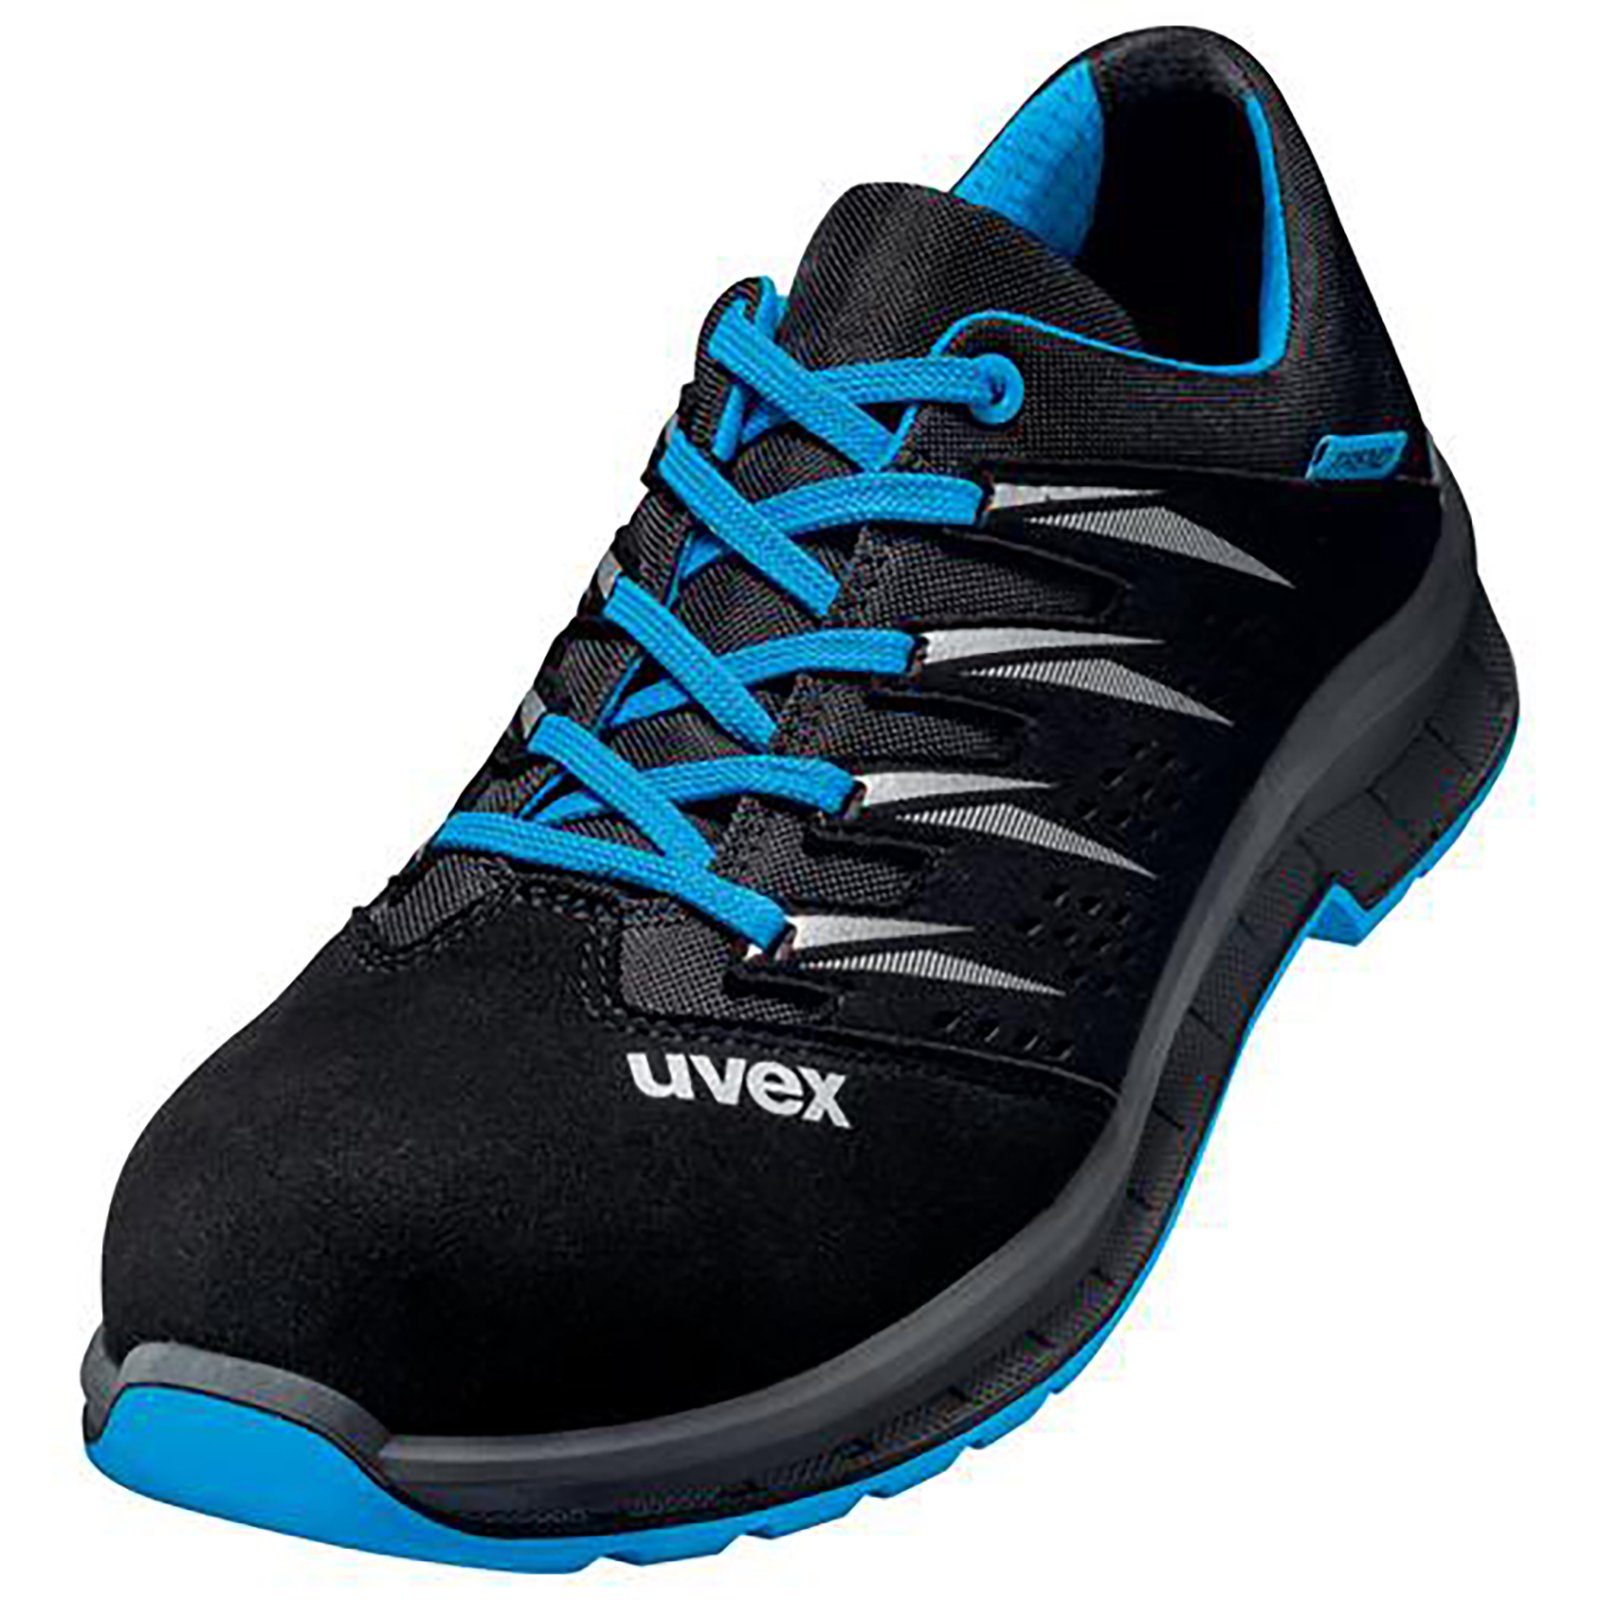 Uvex 2 trend Halbschuhe S1 blau, schwarz Weite 12 Sicherheitsschuh